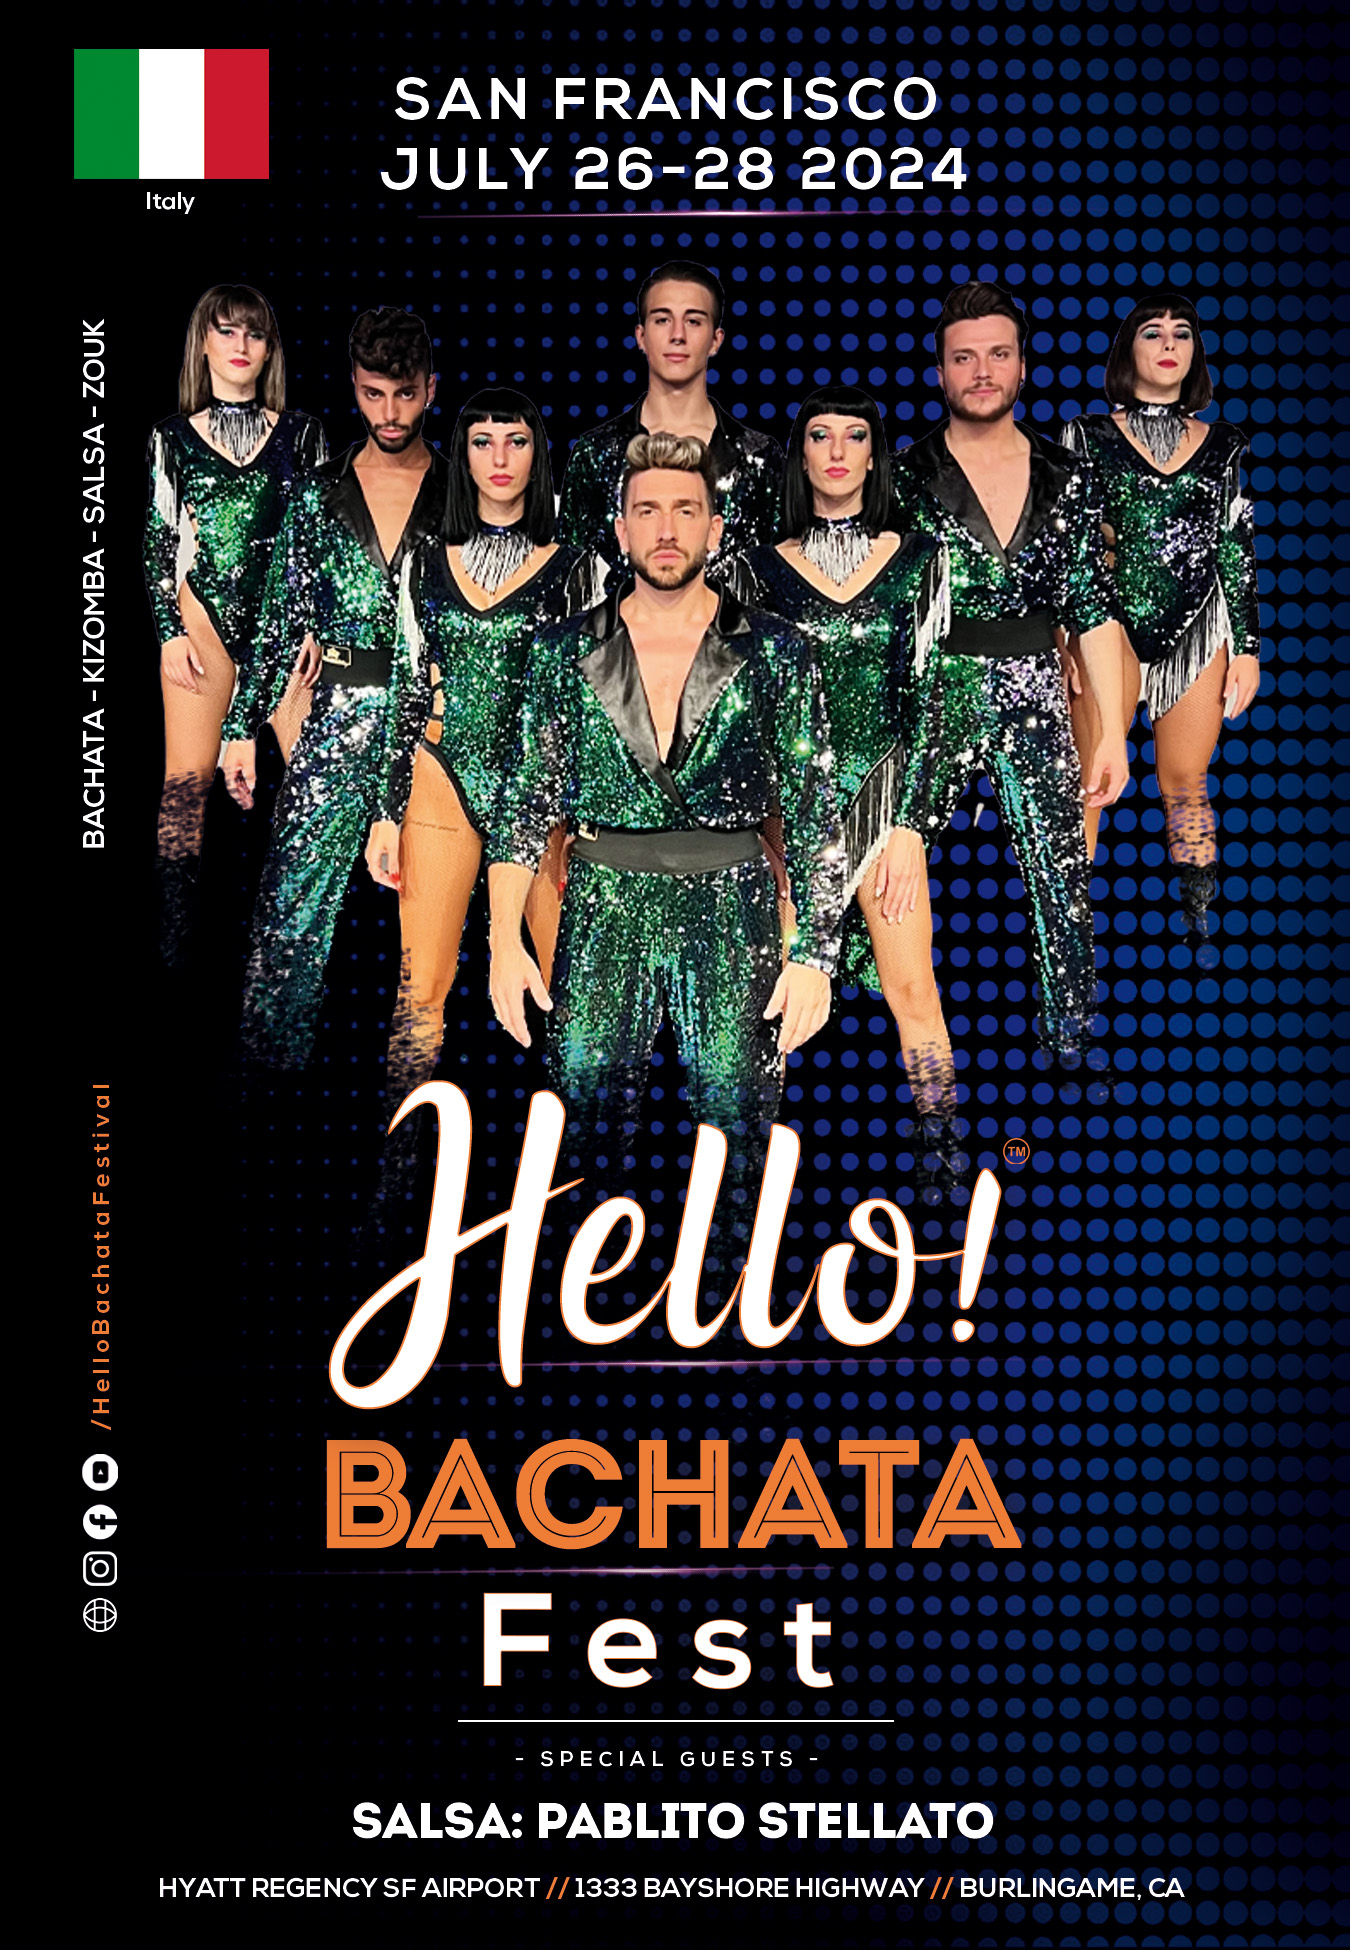 Hello! Bachata Fest - Pablito Stellato - Salsa - Italy